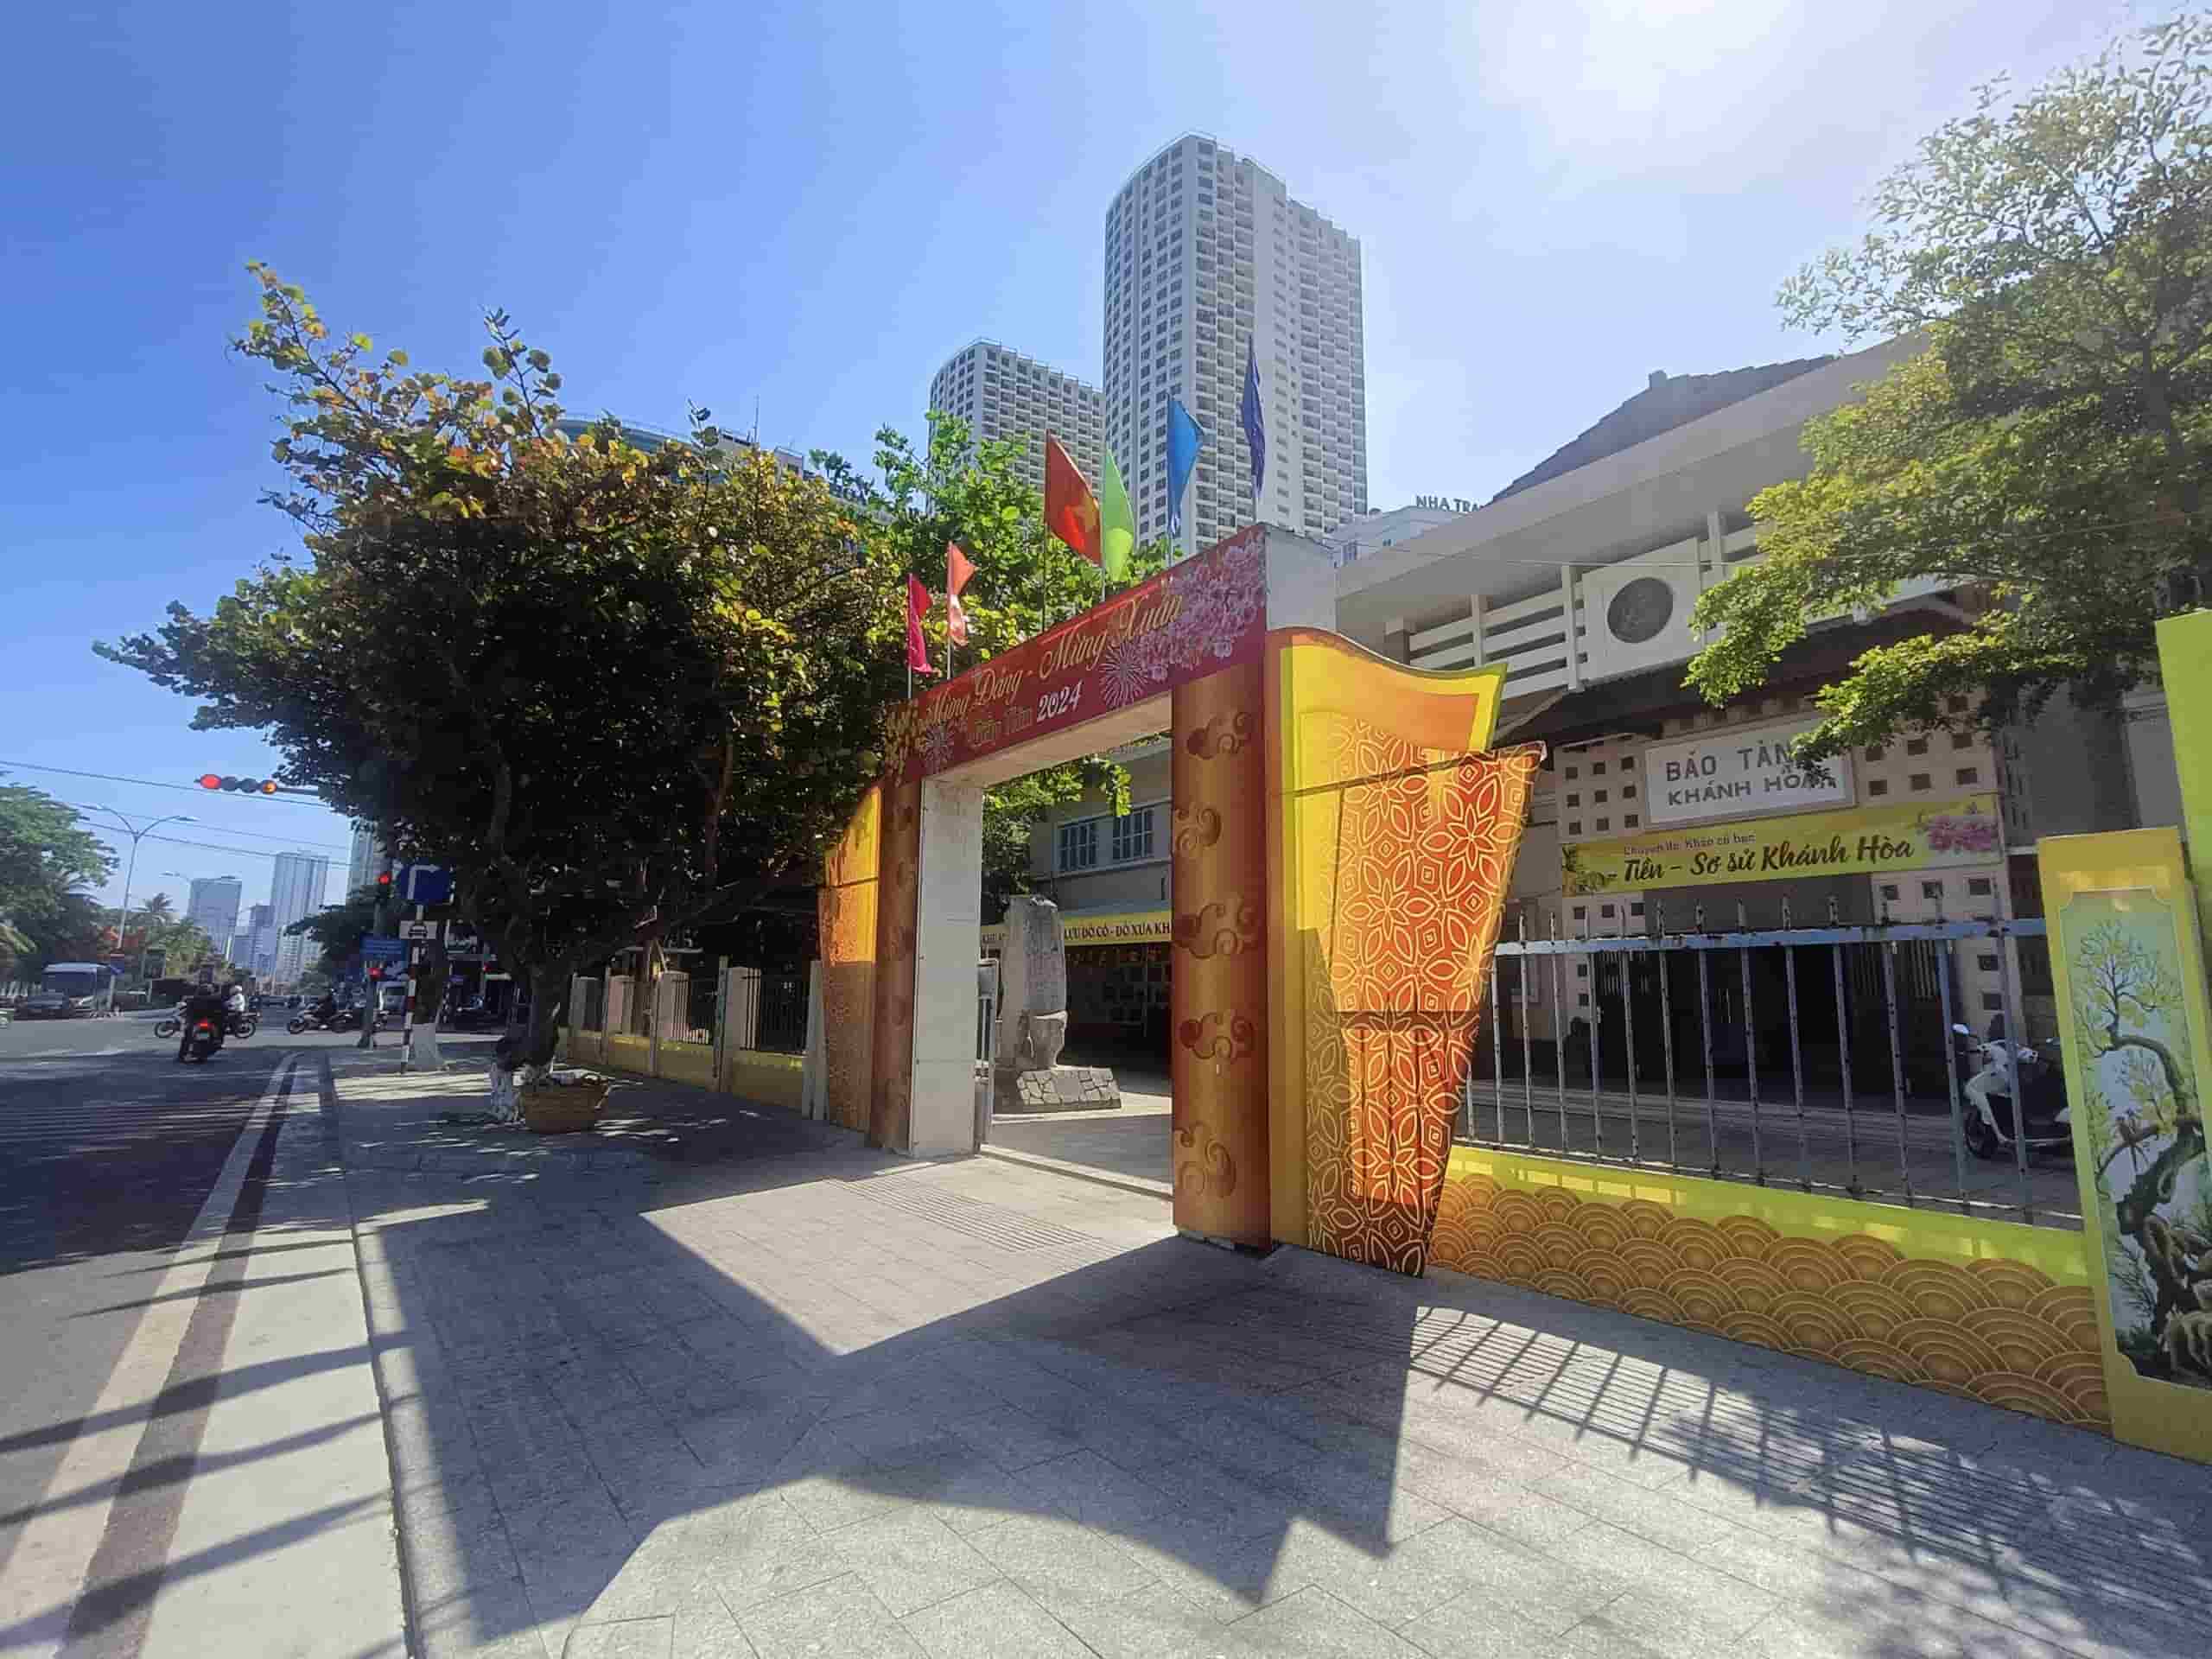 Bảo tàng tỉnh Khánh Hòa hiện nay nằm trên đường Trần Phú được thành lập từ năm 1979. Ảnh: Hữu Long